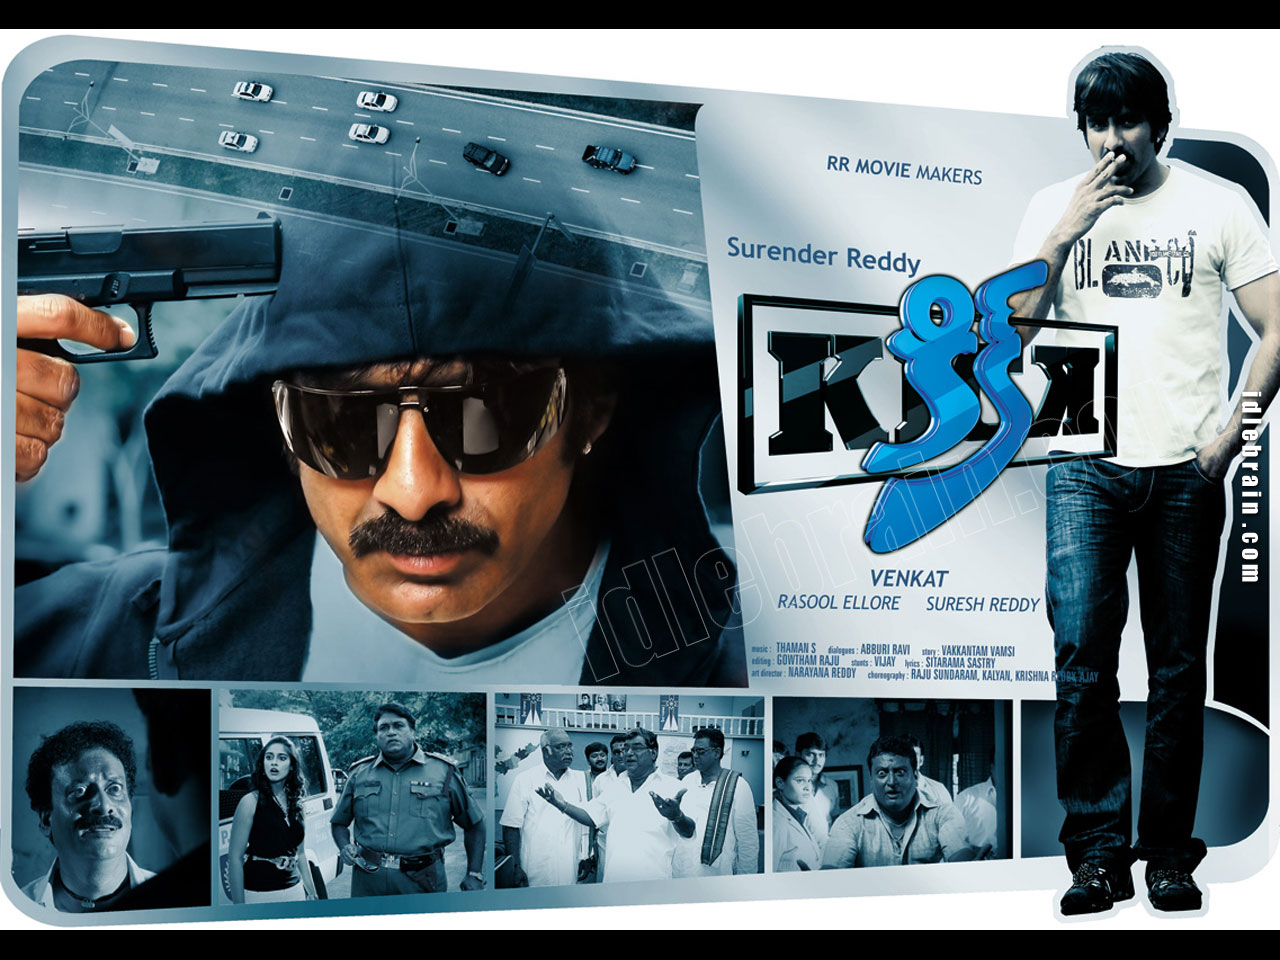 Kick - Telugu film wallpapers - Telugu cinema - Ravi Teja & Ileana